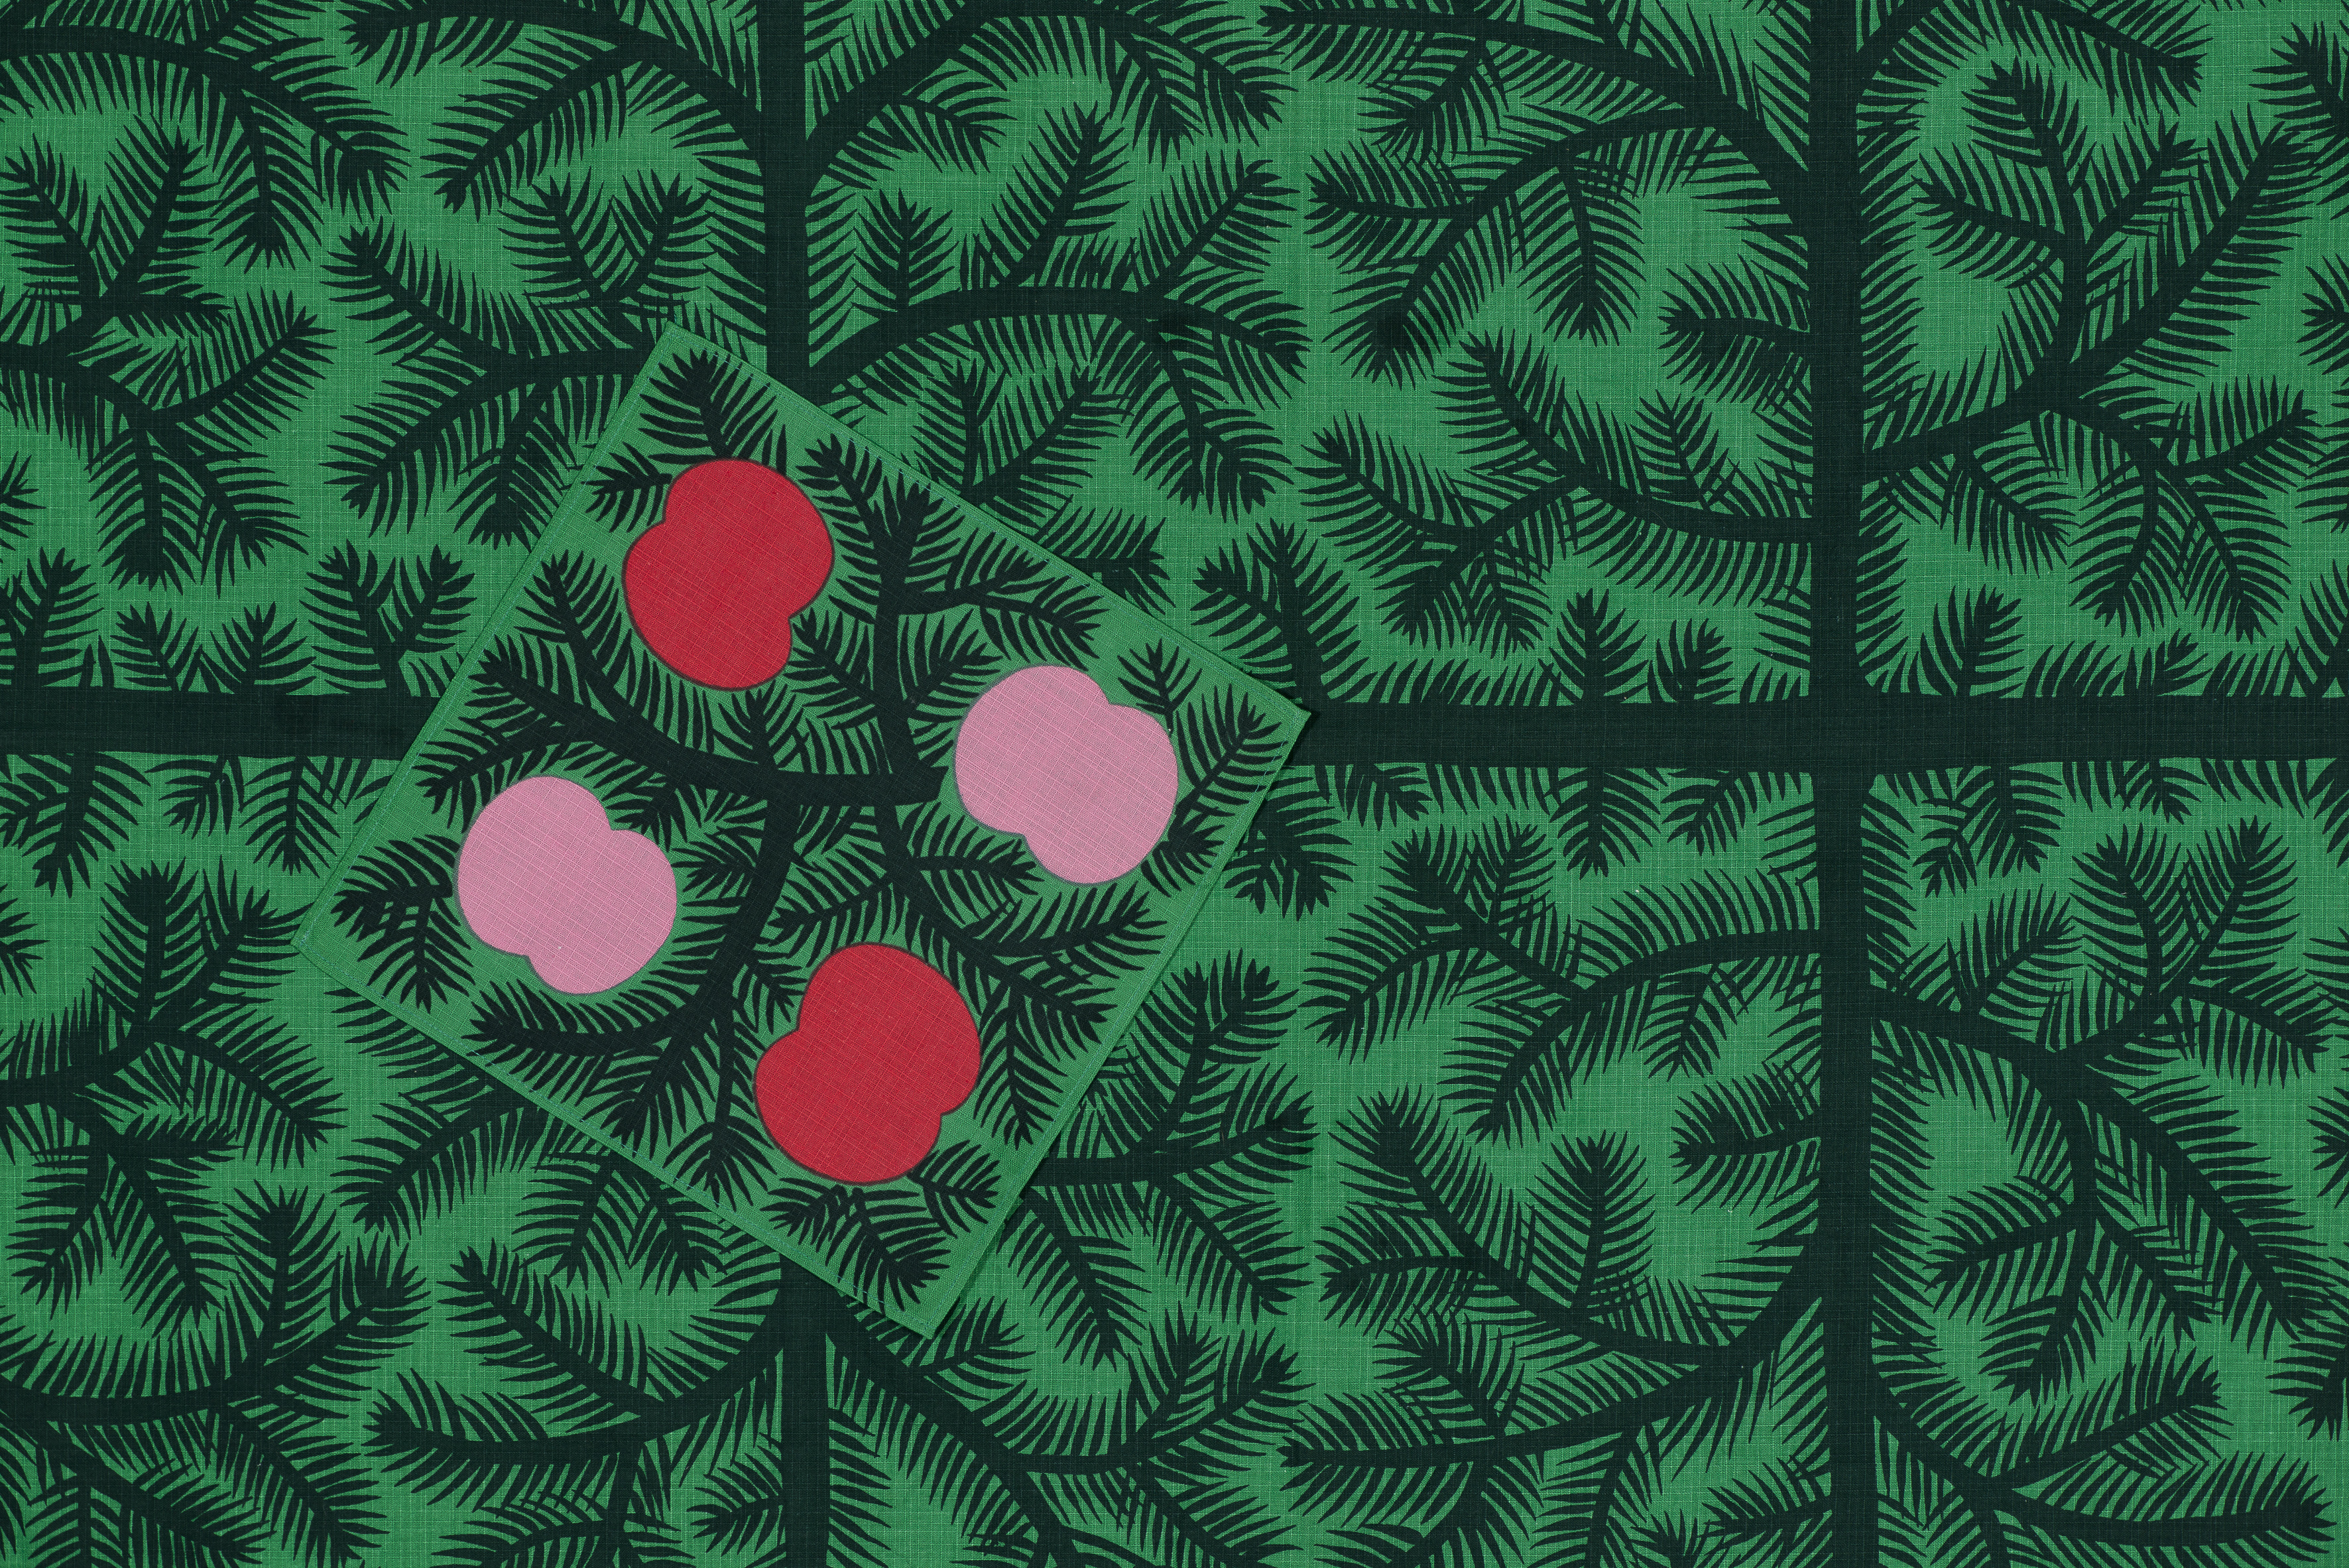 En grön julduk med grankvistmönster och en romb med fyra rosa och röda äppelliknande former på